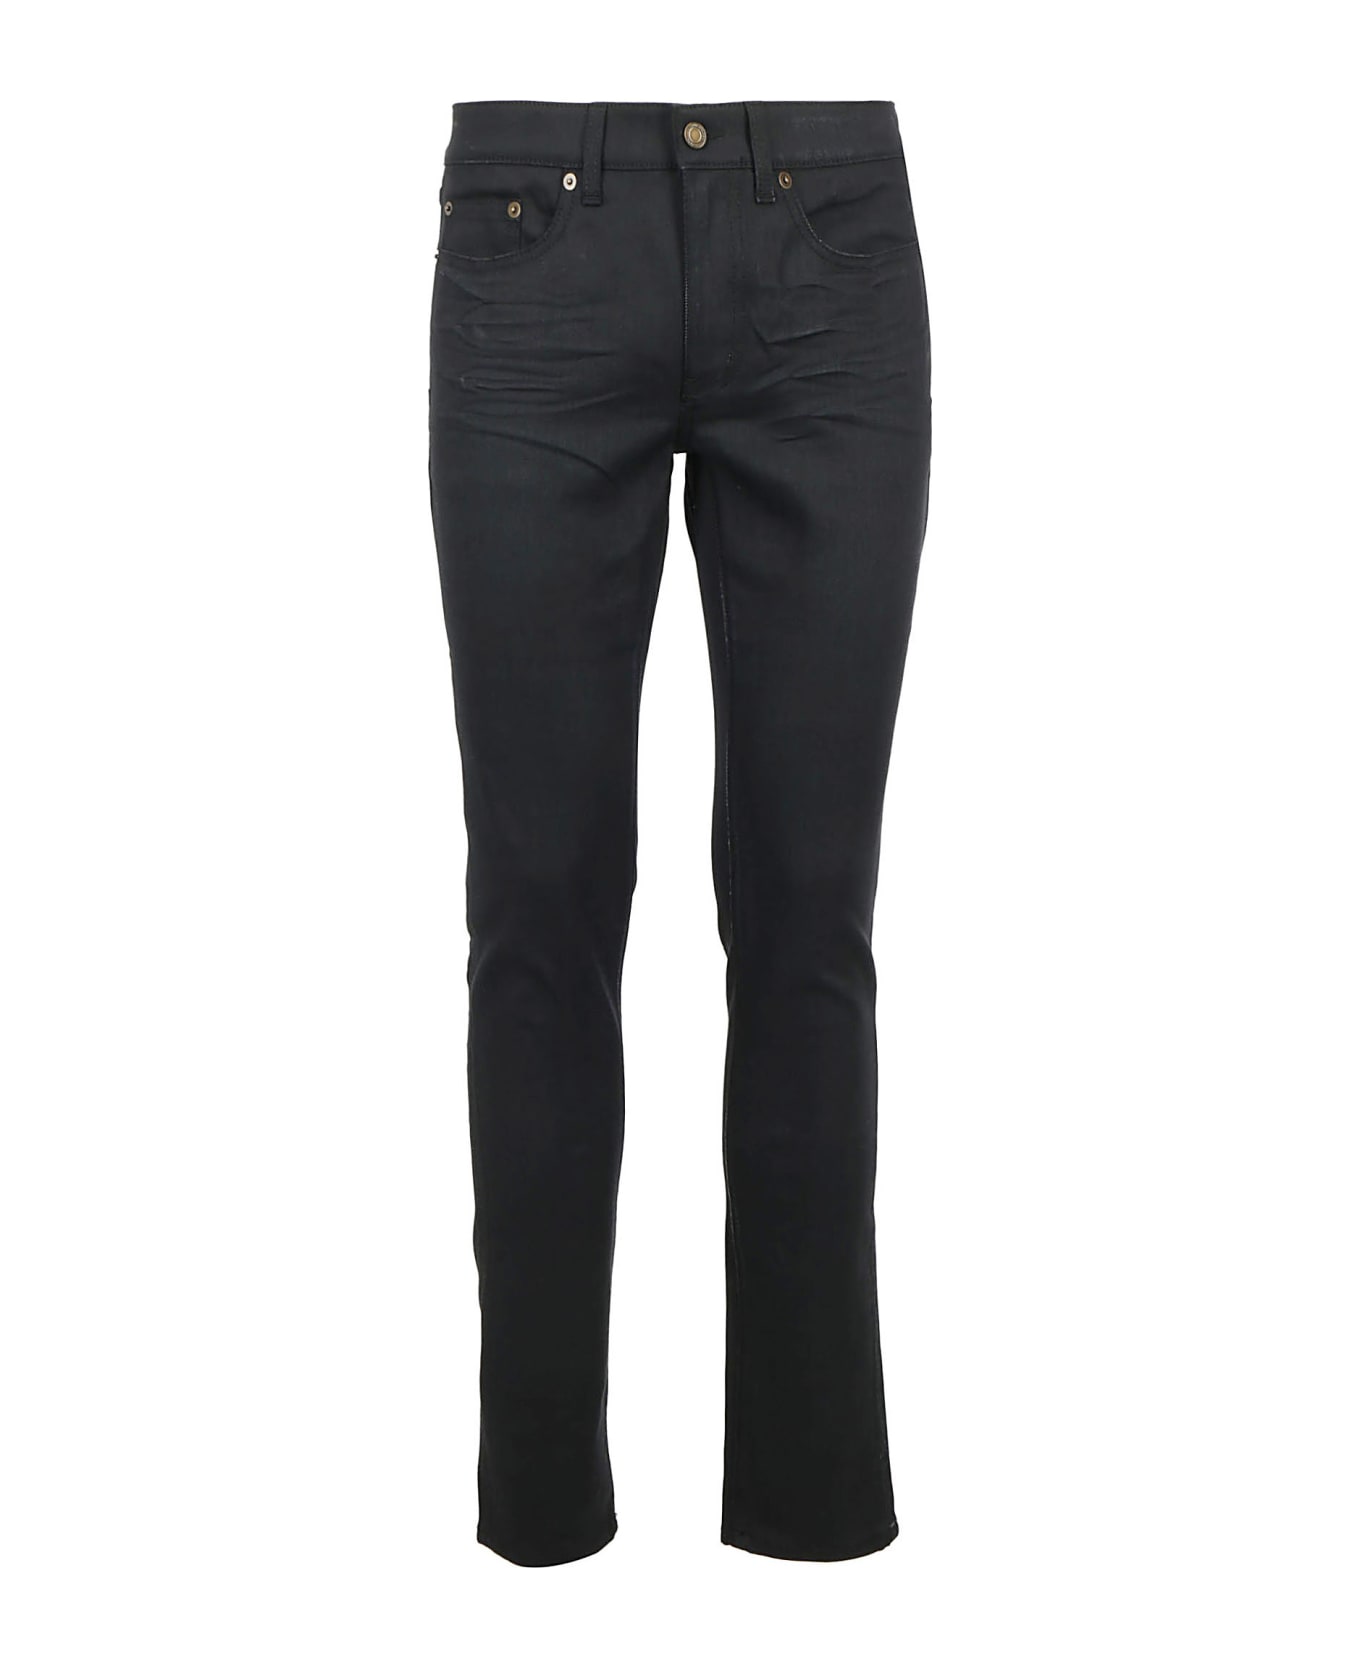 Saint Laurent Jeans - Used Black